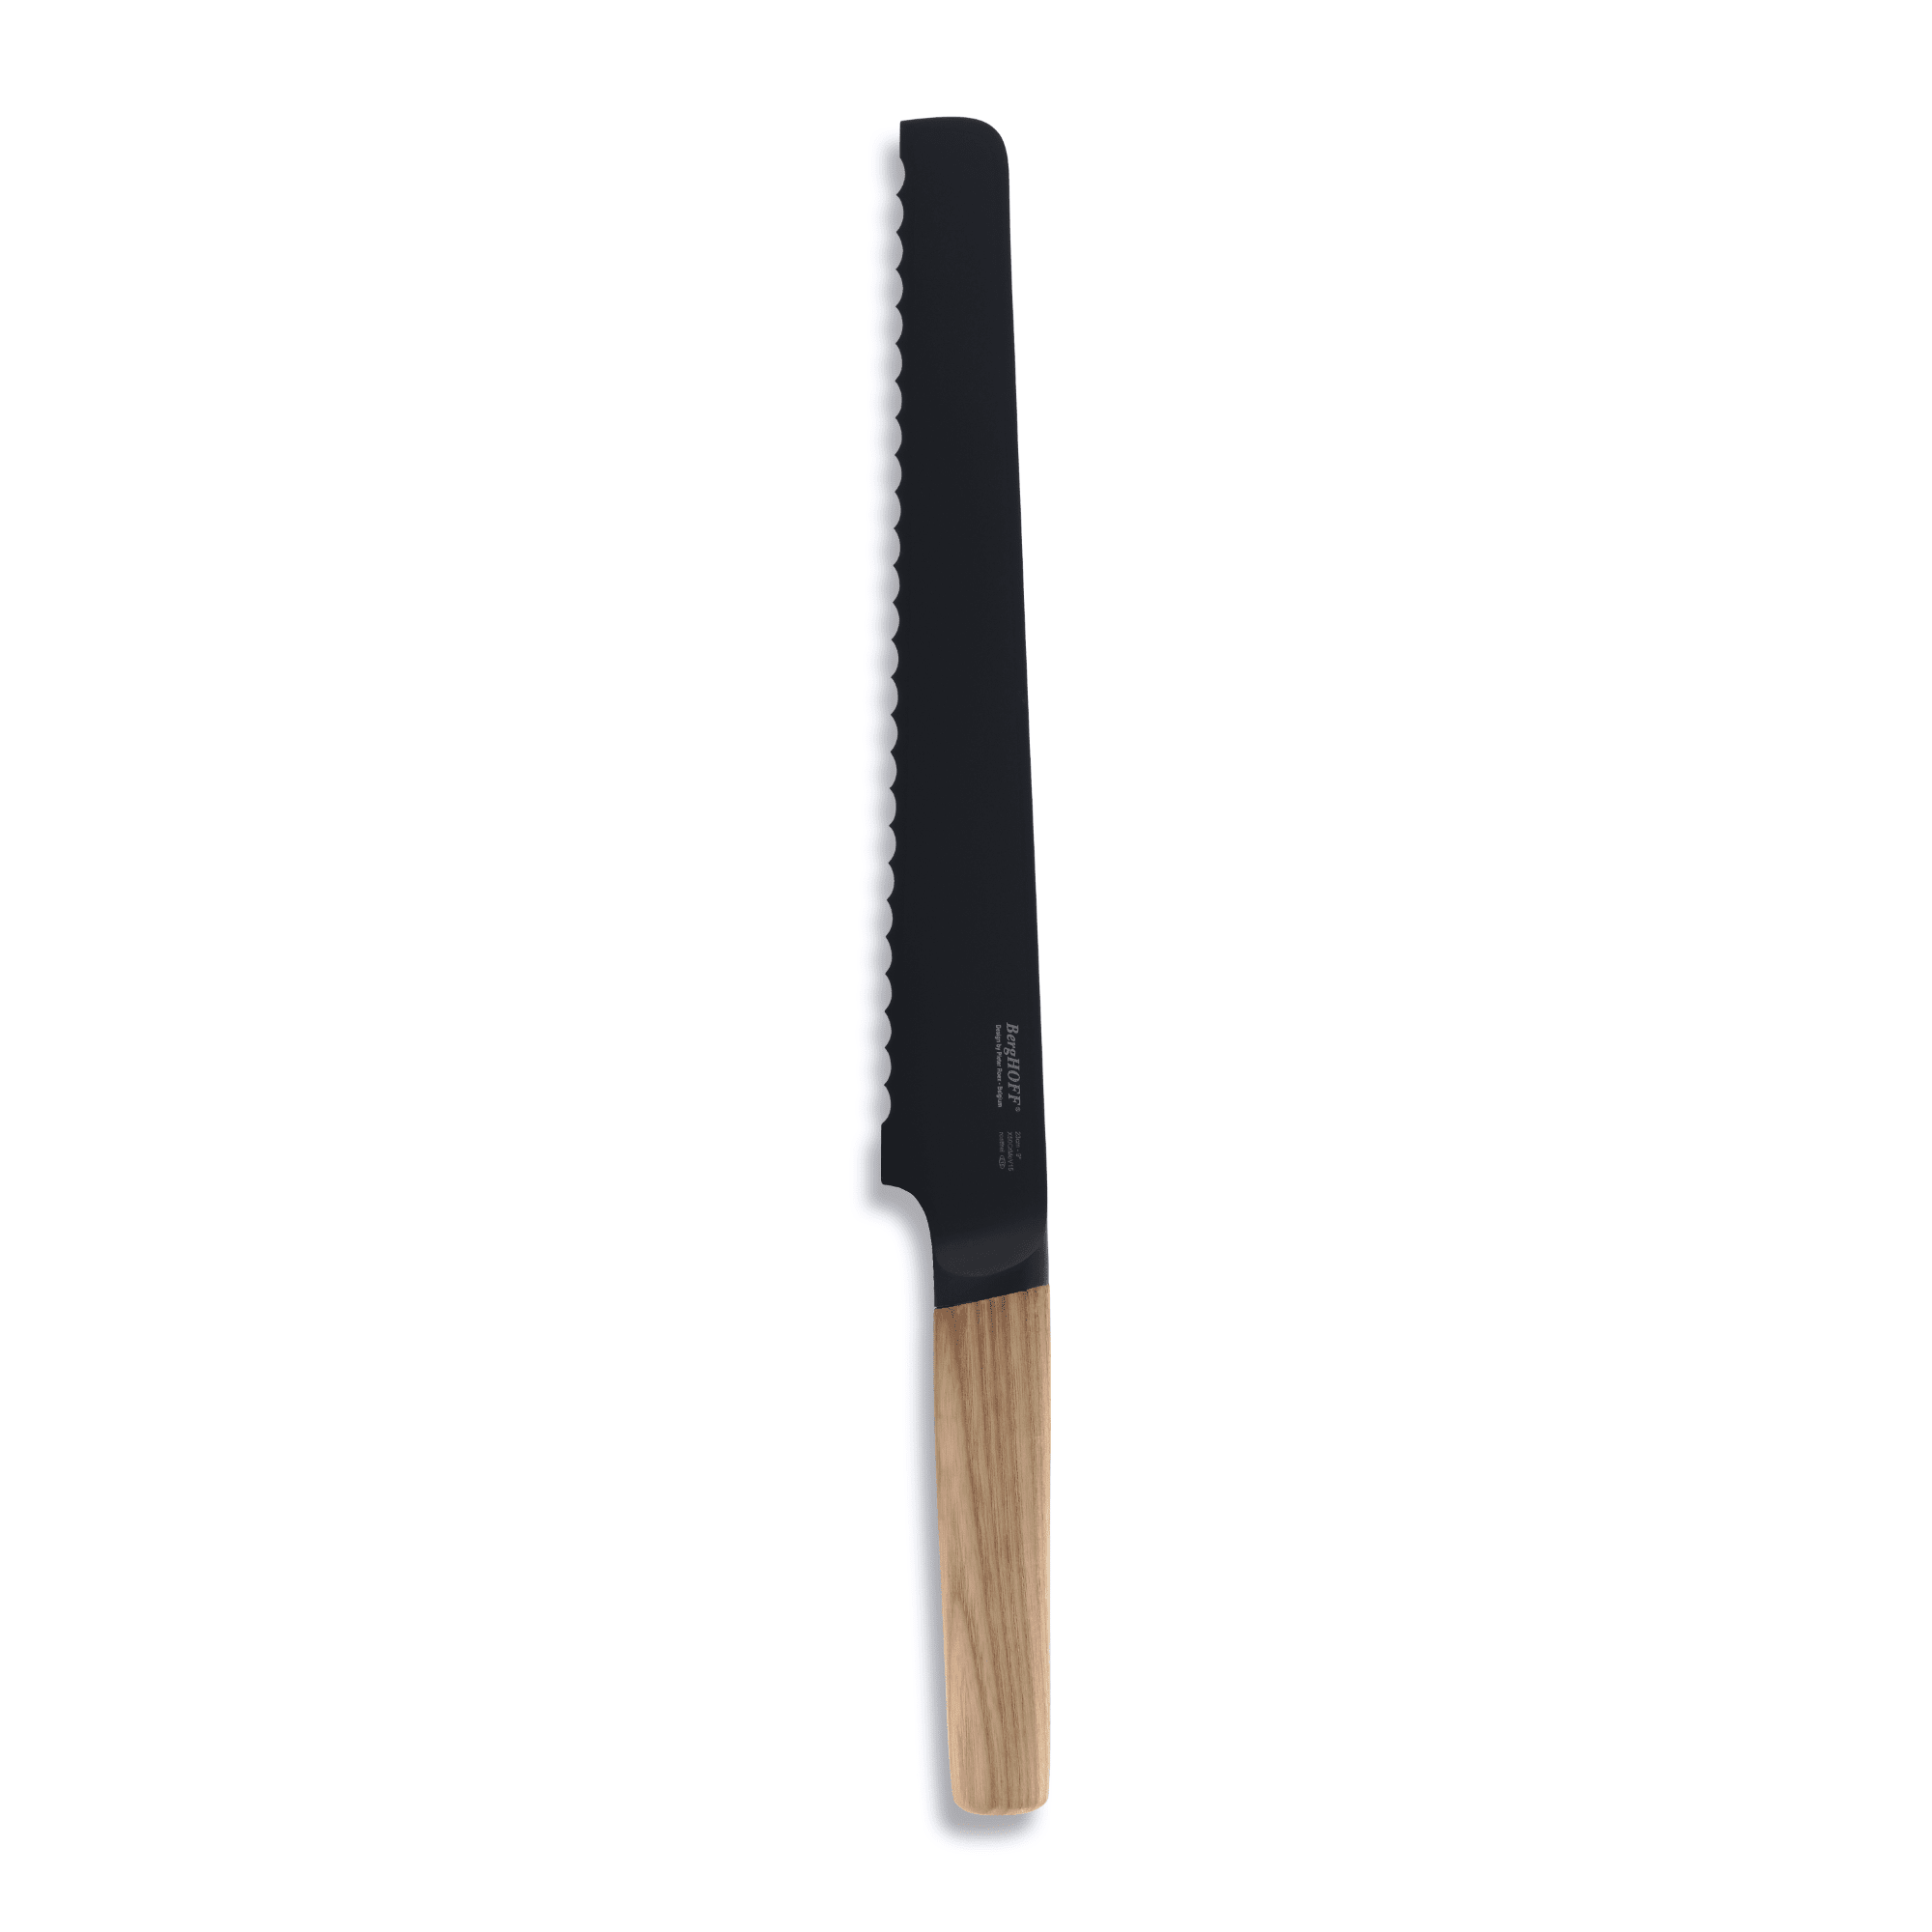 BergHOFF - سكينة خبز بمقبض خشبي من رون - ستانلس ستيل - 23 سم - 6600098